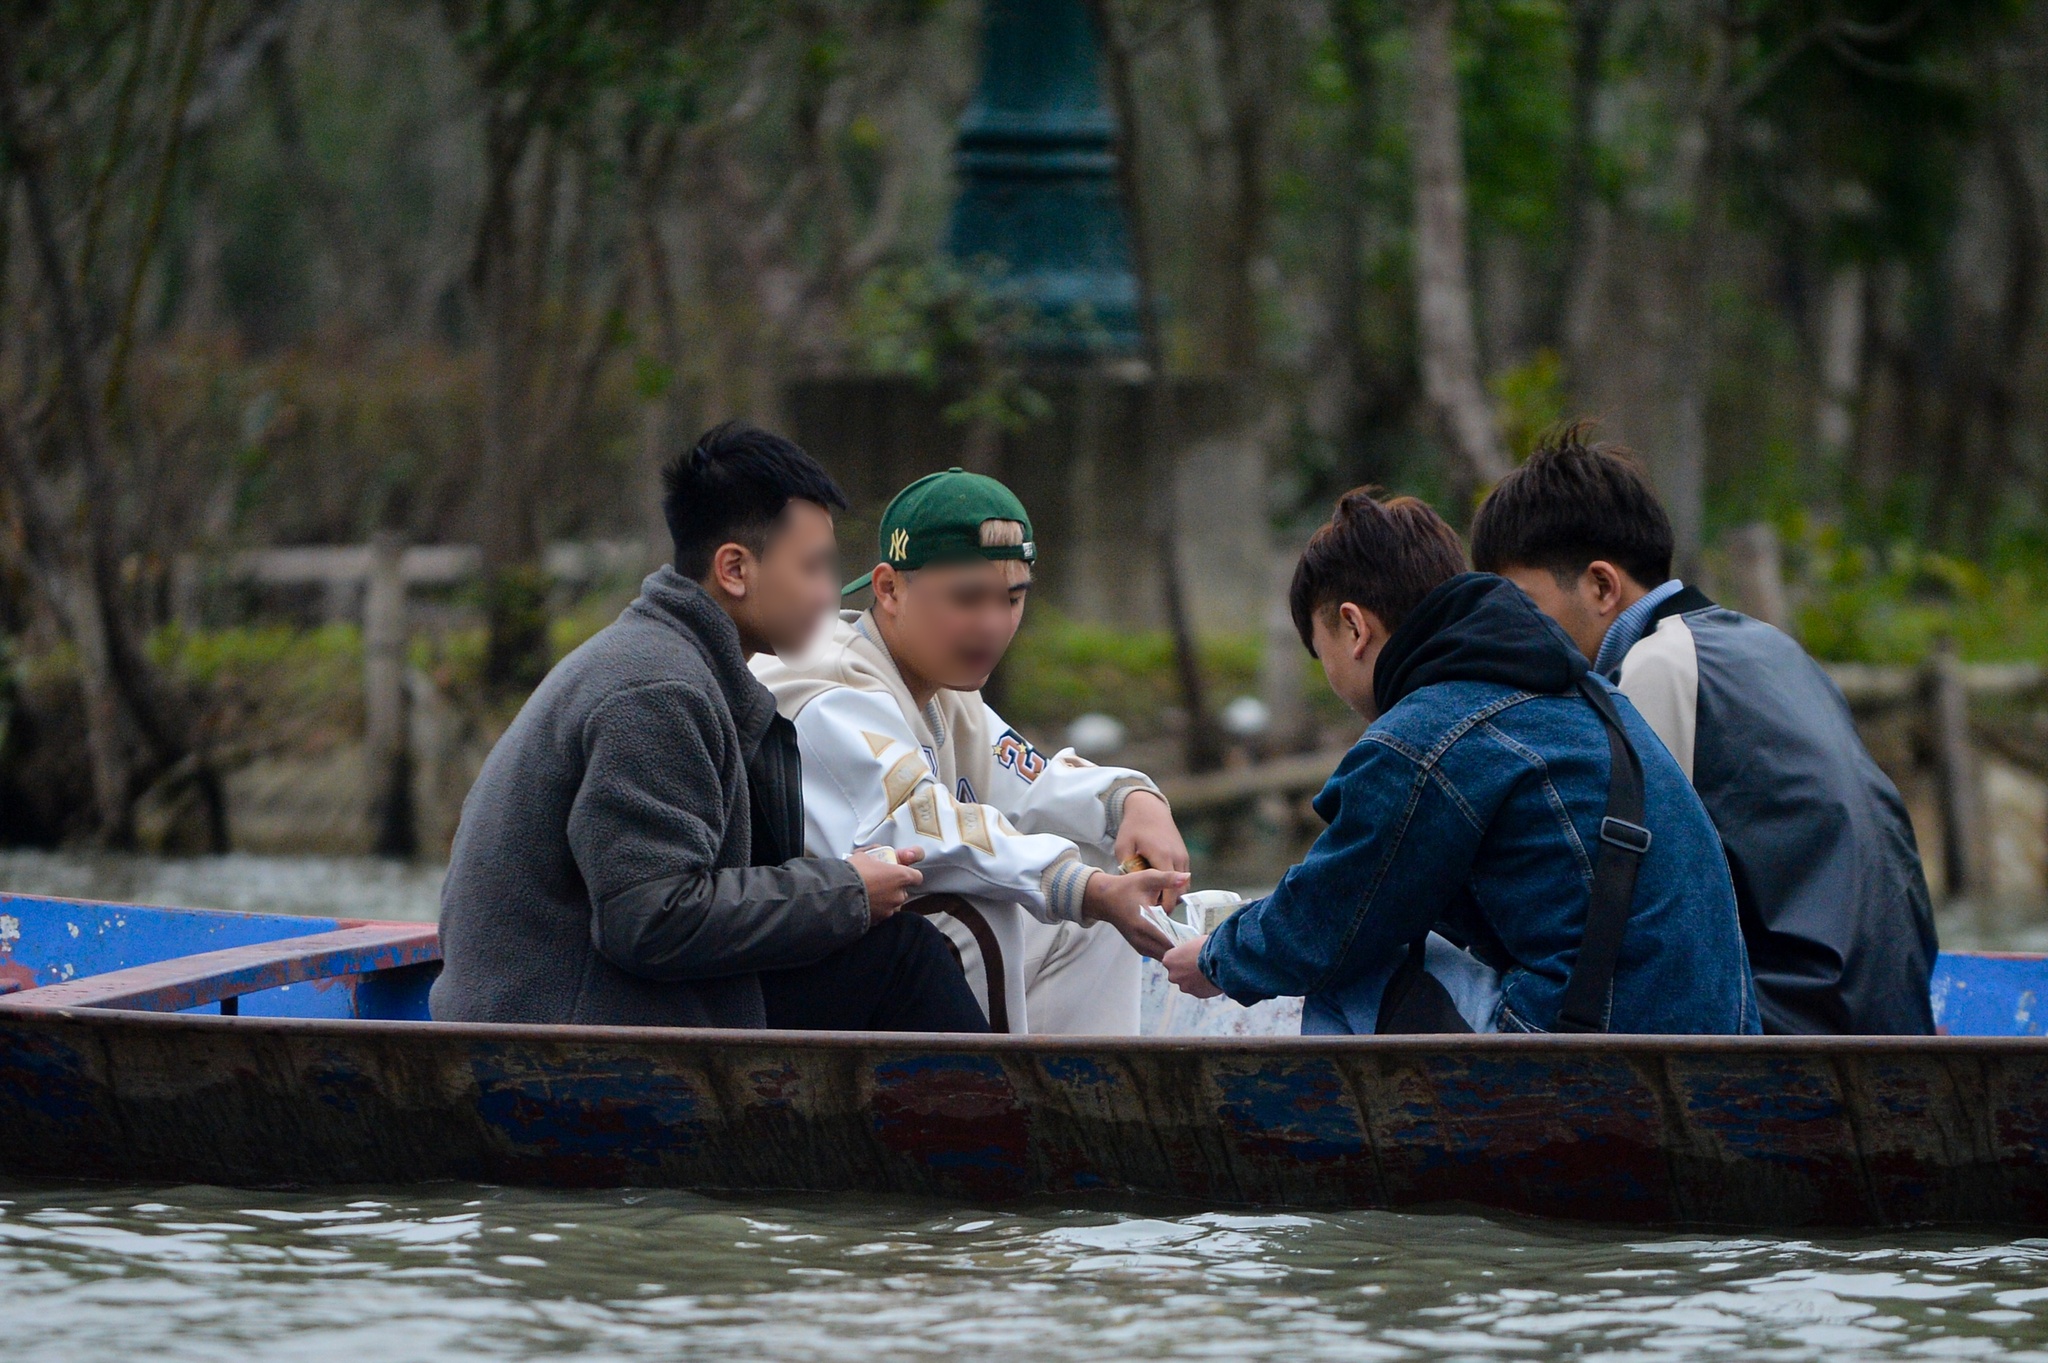 Du khách đánh bạc trên thuyền ở chùa Hương, ban quản lý 'than' khó - ảnh 5